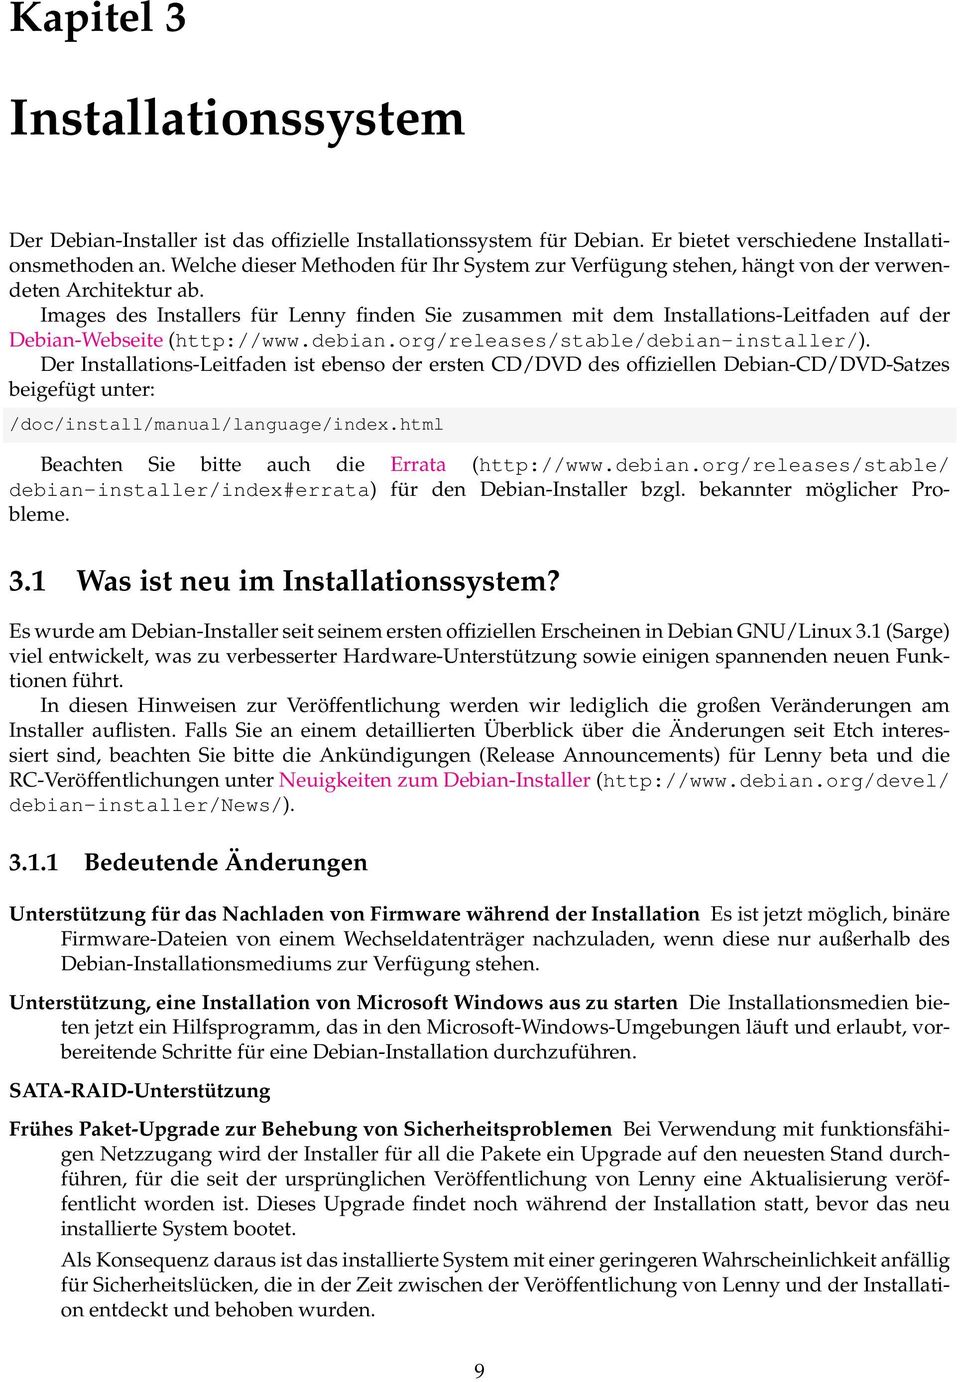 Images des Installers für Lenny finden Sie zusammen mit dem Installations-Leitfaden auf der Debian-Webseite (http://www.debian.org/releases/stable/debian-installer/).